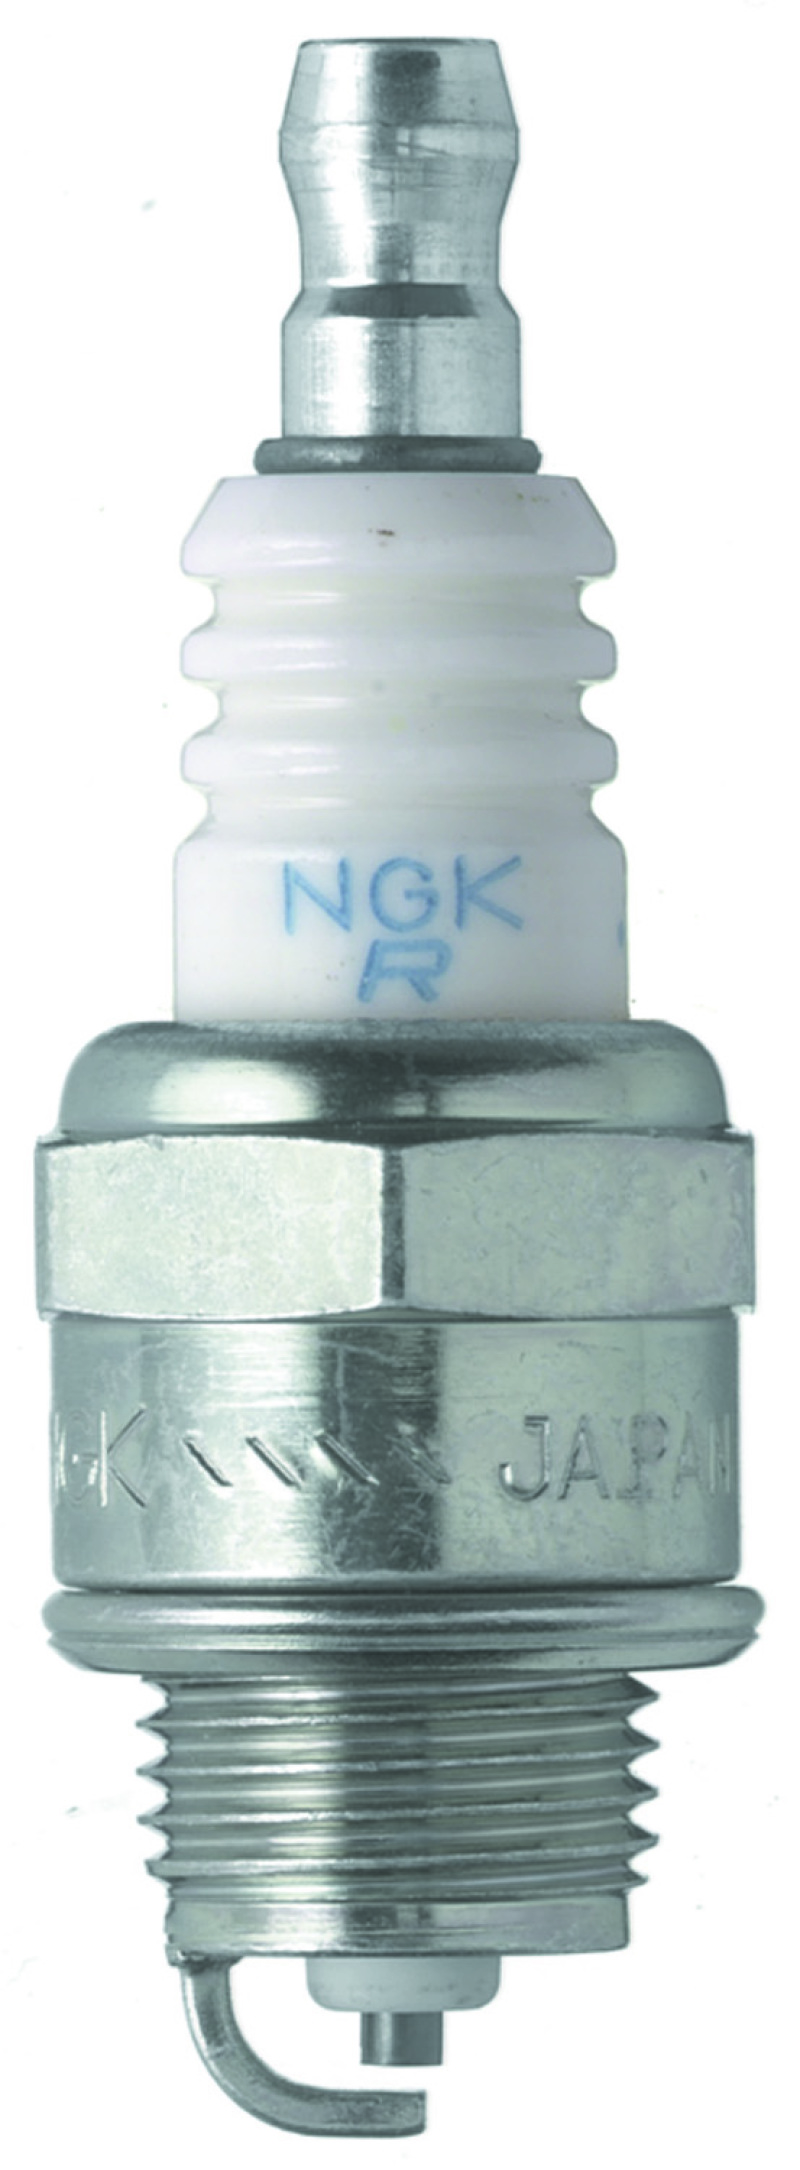 NGK Standard Spark Plug Box of 10 (BPMR4A-10) - 6328